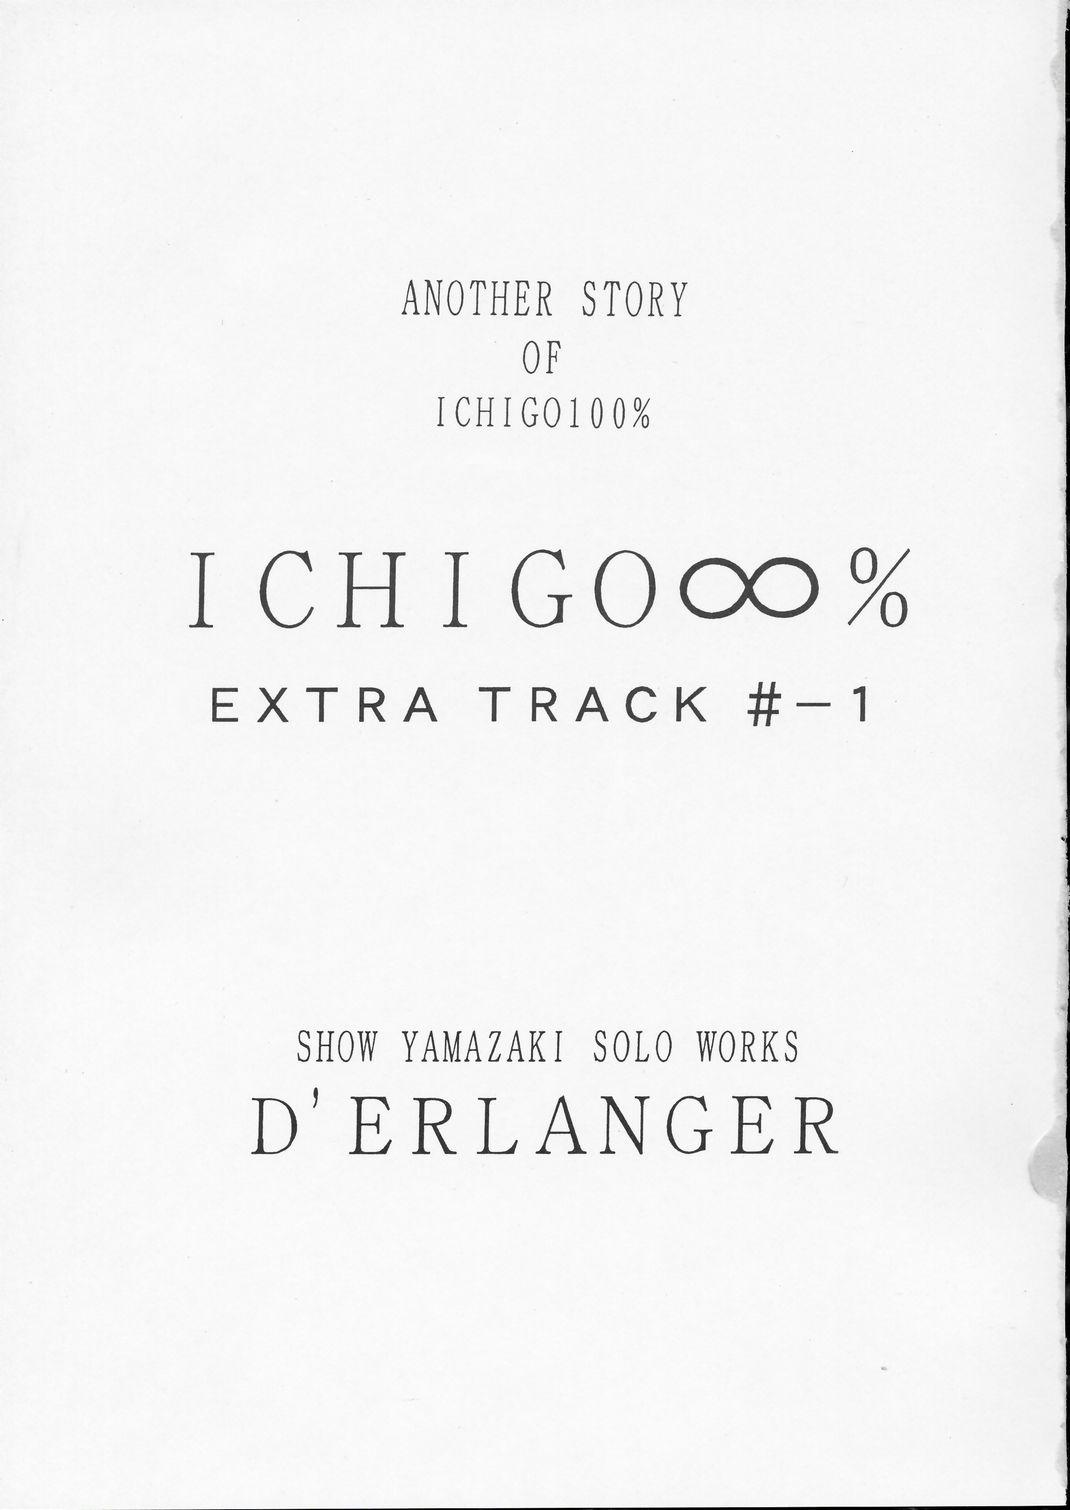 ICHIGO∞% EXTRA TRACK -1 1